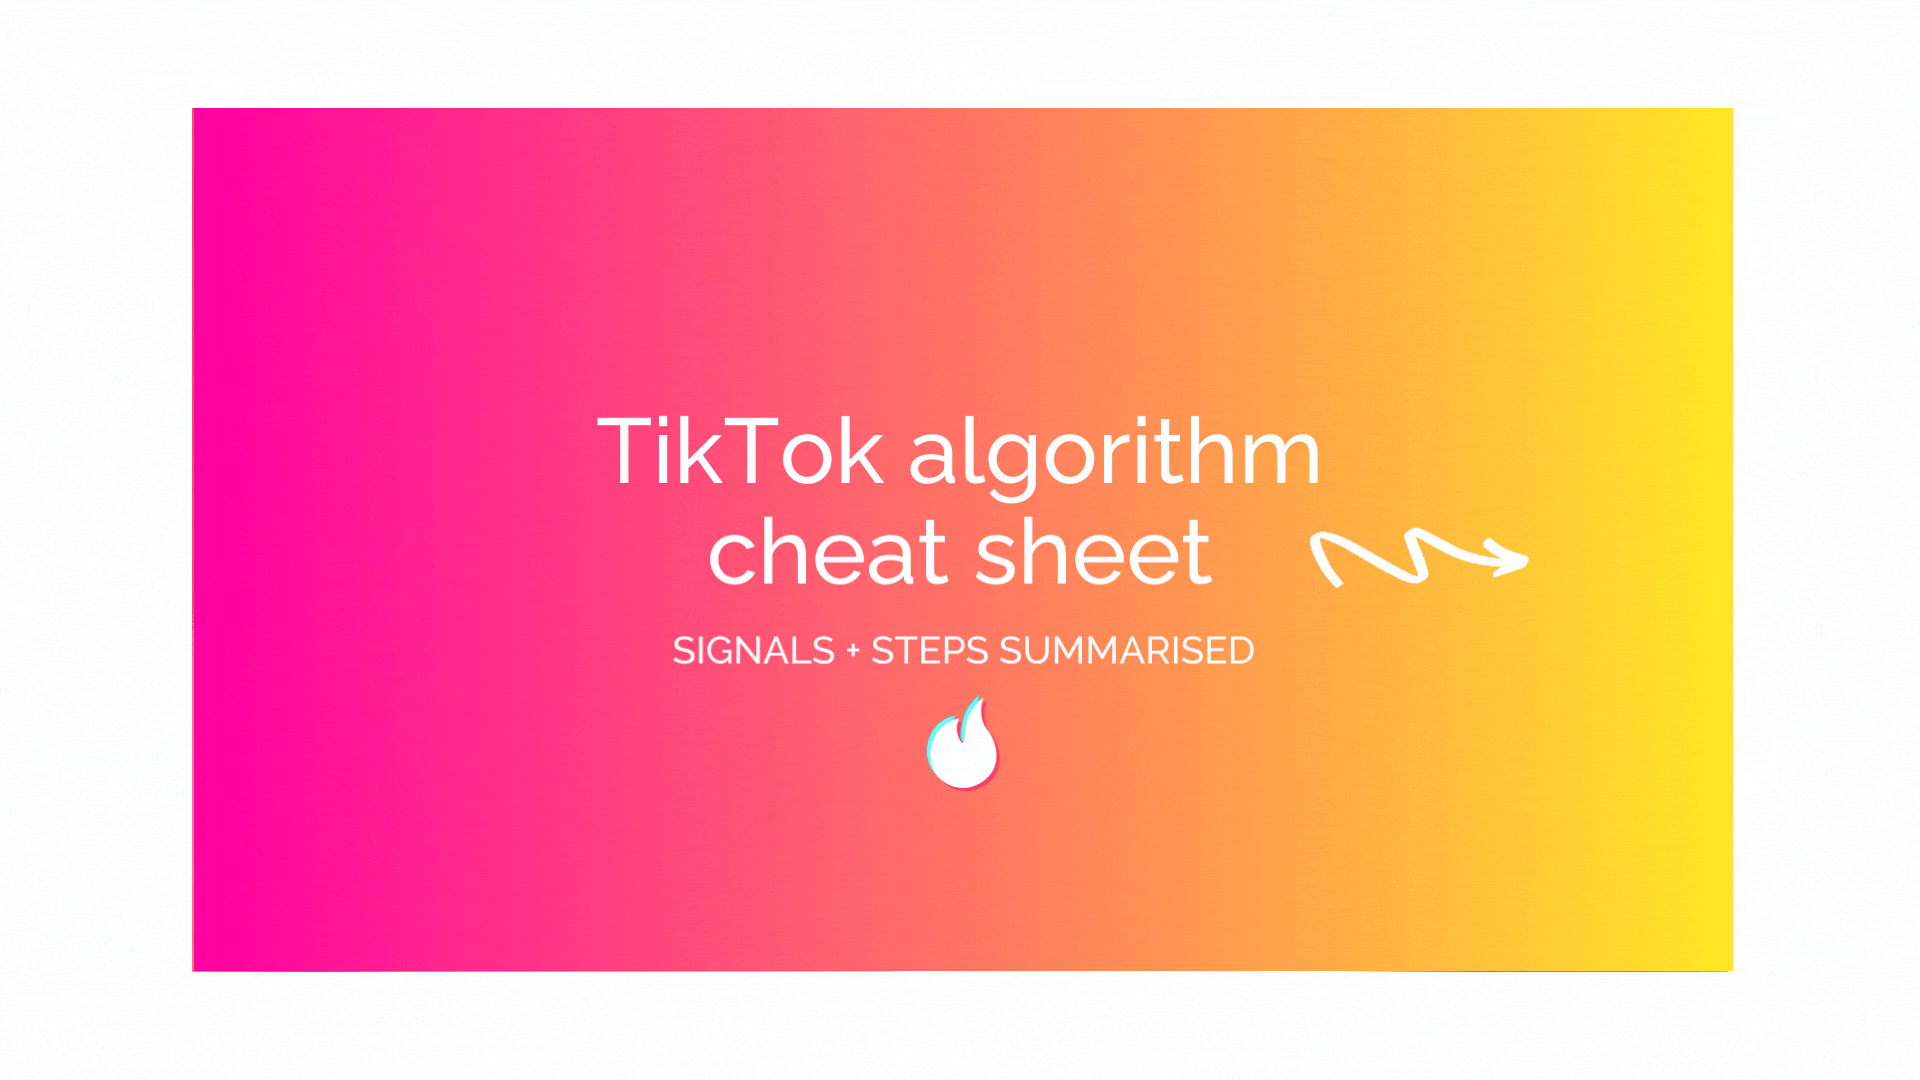 TikTok algortihm cheat sheet